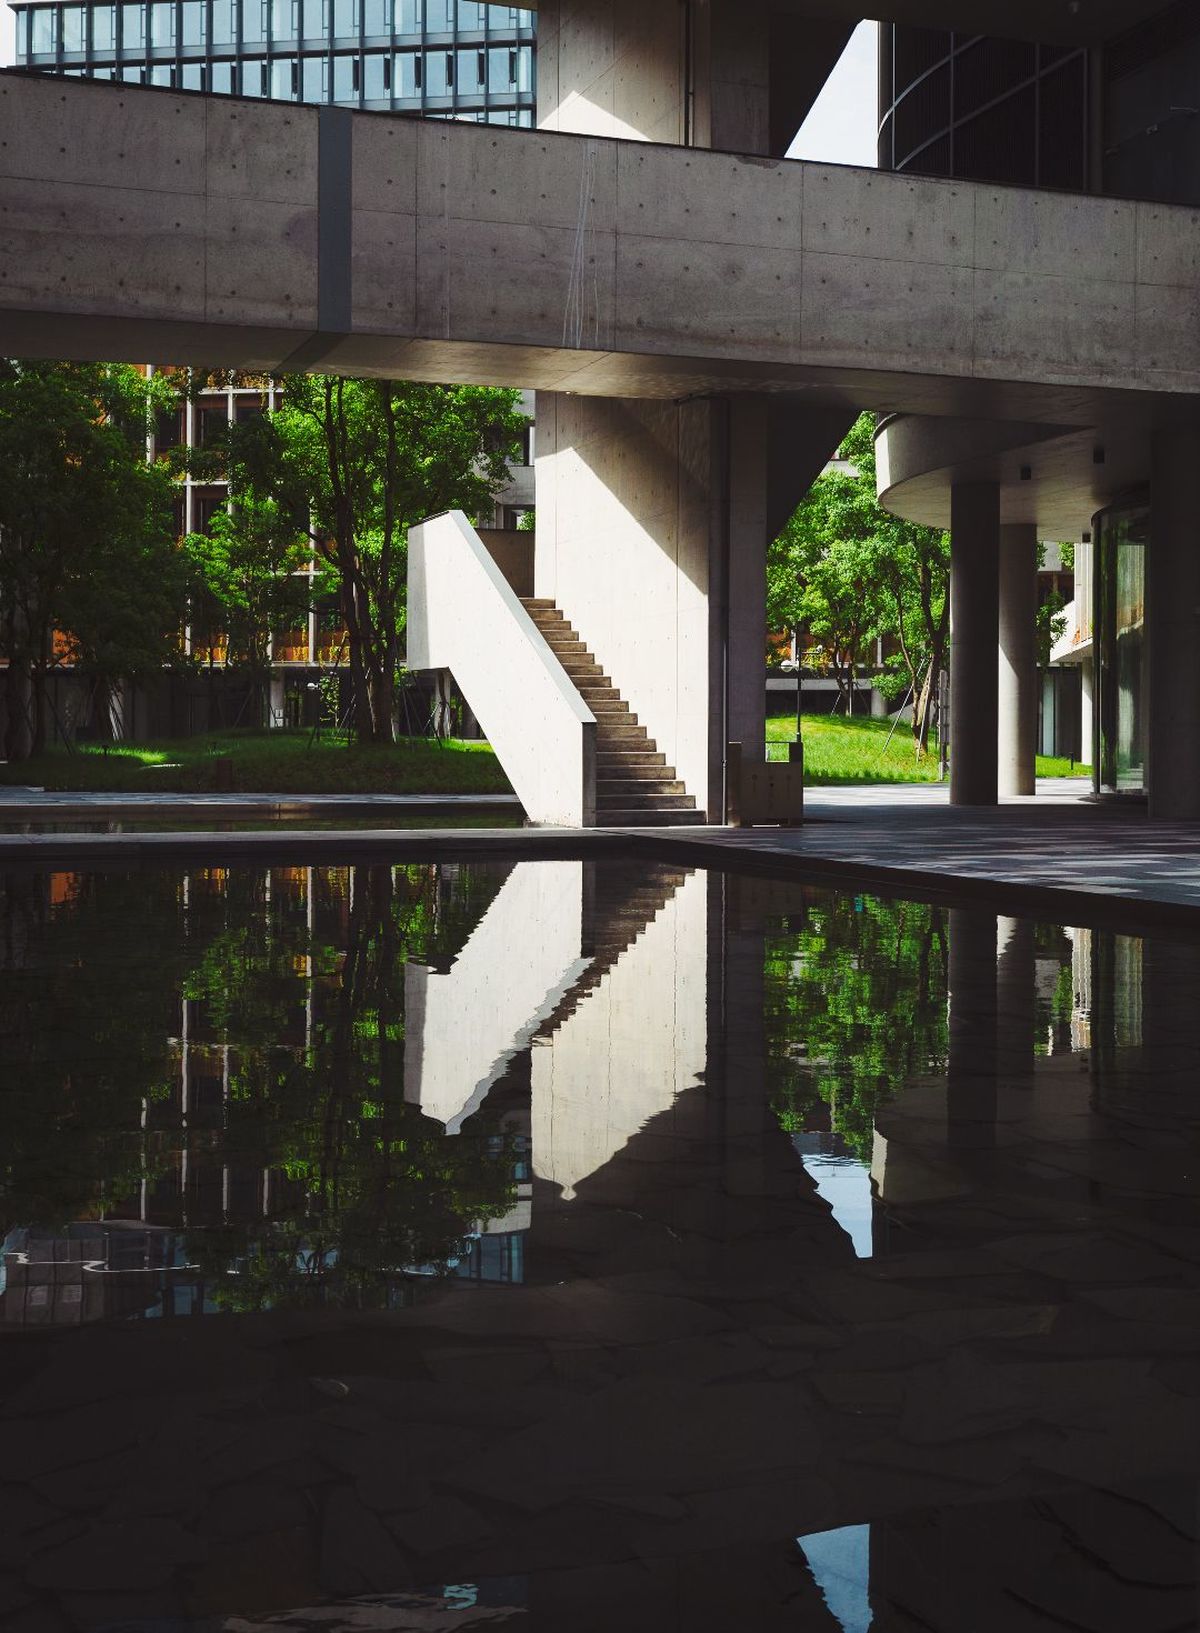 大量的水反映出建筑物的反射